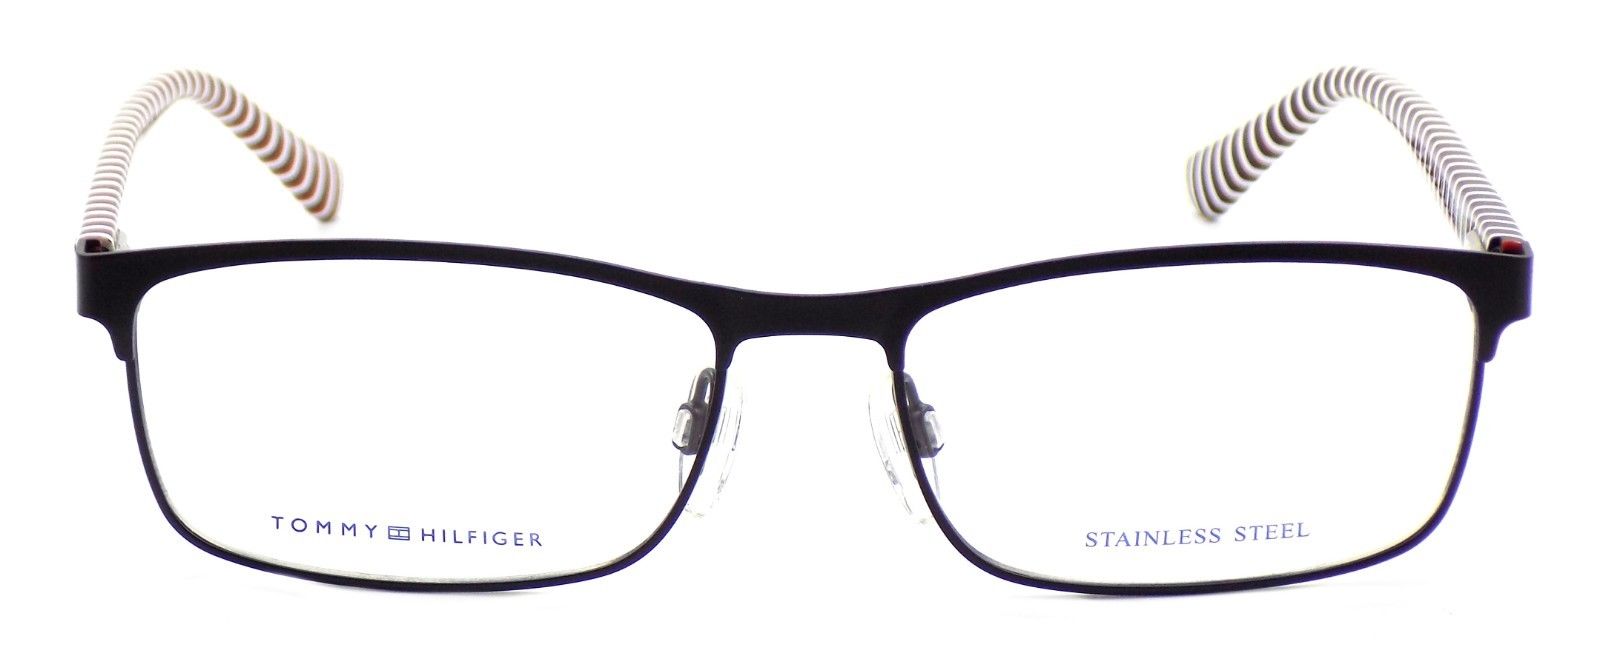 2-TOMMY HILFIGER TH 1529 807 Men's Eyeglasses Frames 54-16-145 Matte Black Stripes-762753222633-IKSpecs